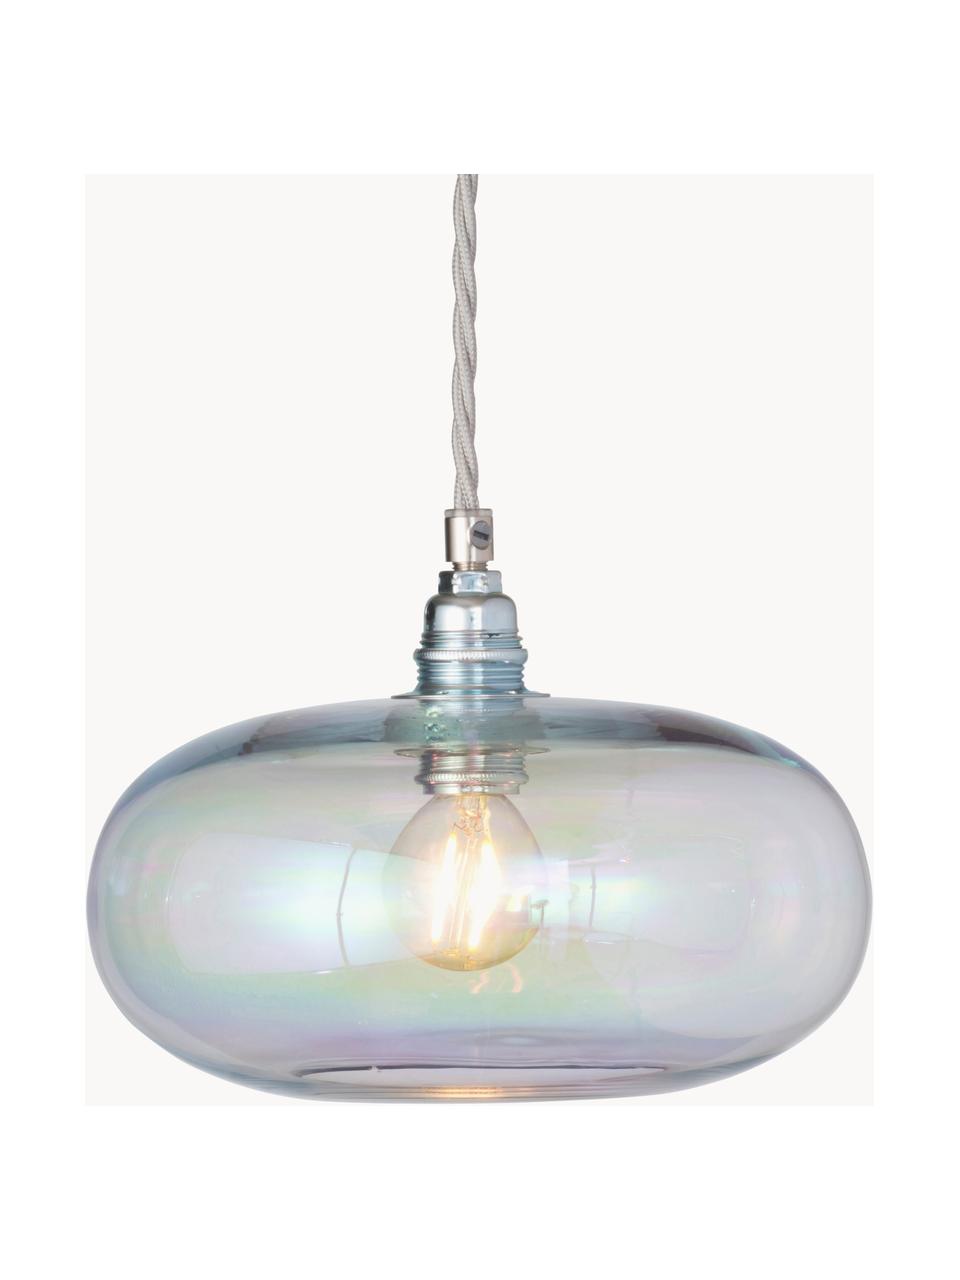 Lampa wisząca ze szkła dmuchanego Horizon, Stelaż: metal powlekany, Opalizujący, odcienie srebrnego, Ø 21 x W 14 cm